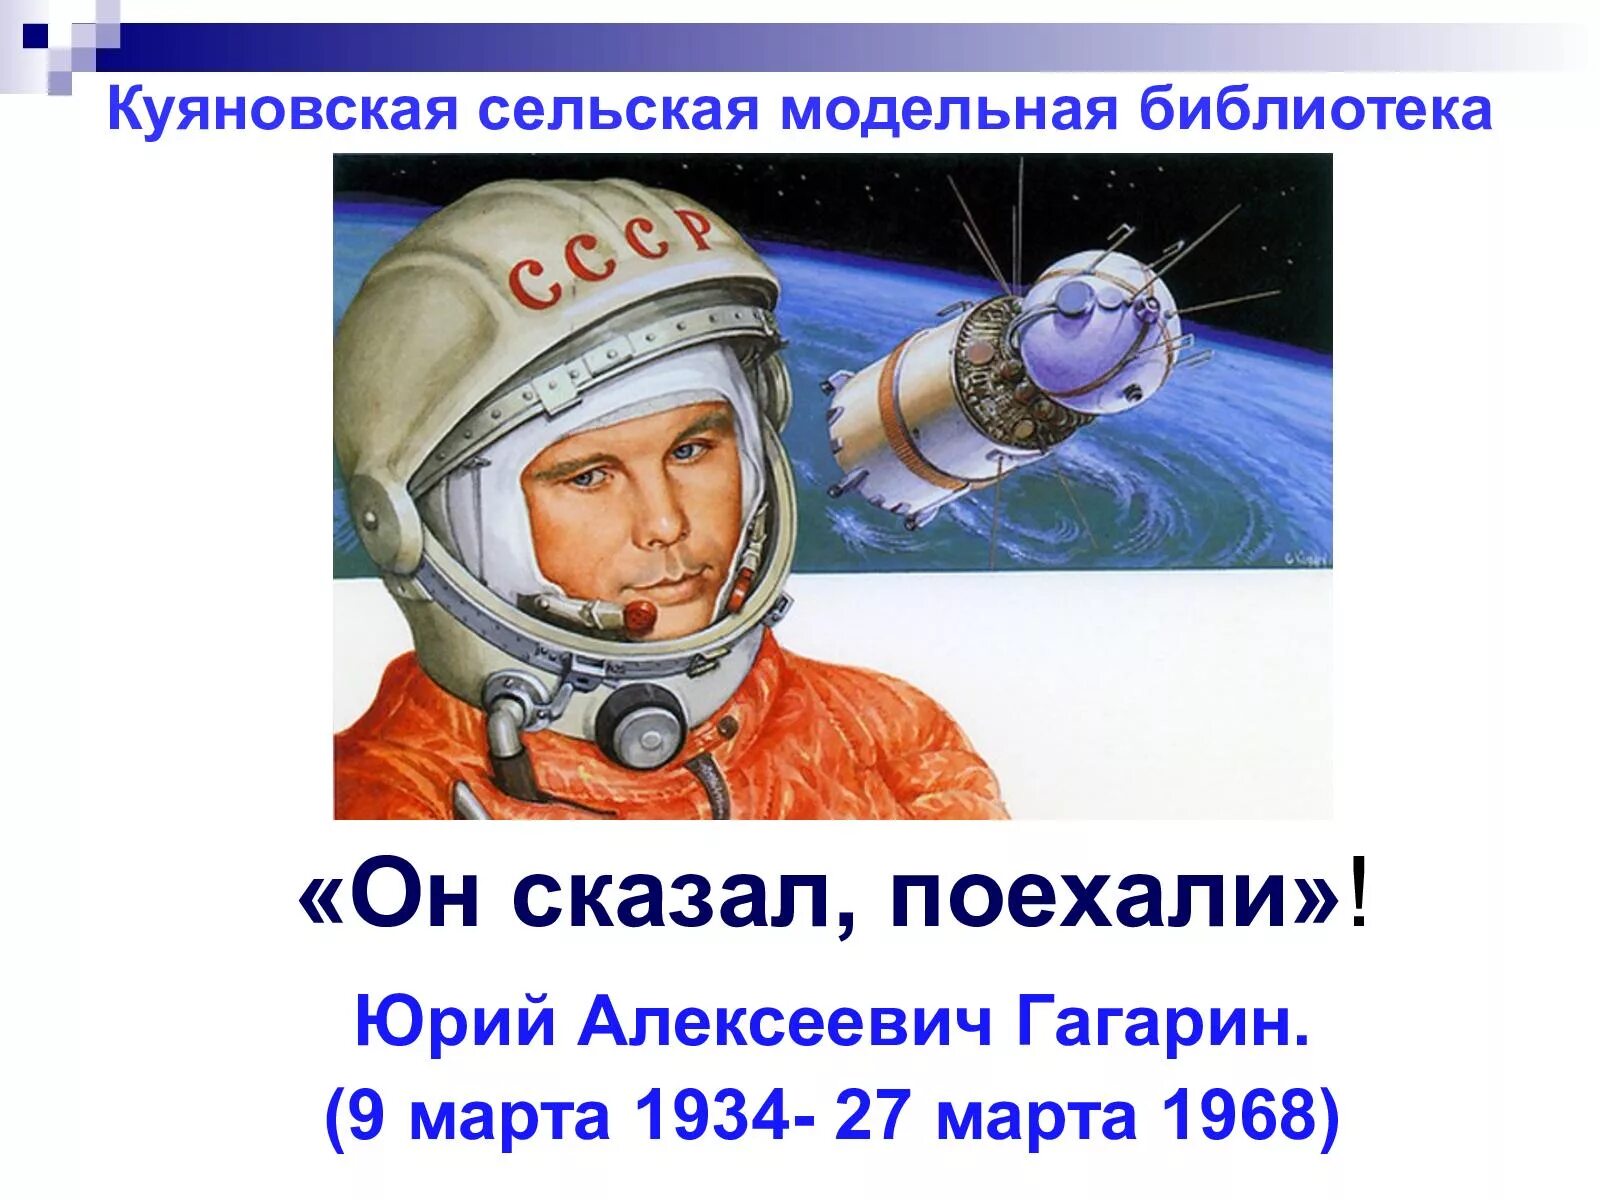 Он сказал поехали про гагарина. Он сказал поехали. Гагарин сказал поехали. День космонавтики.